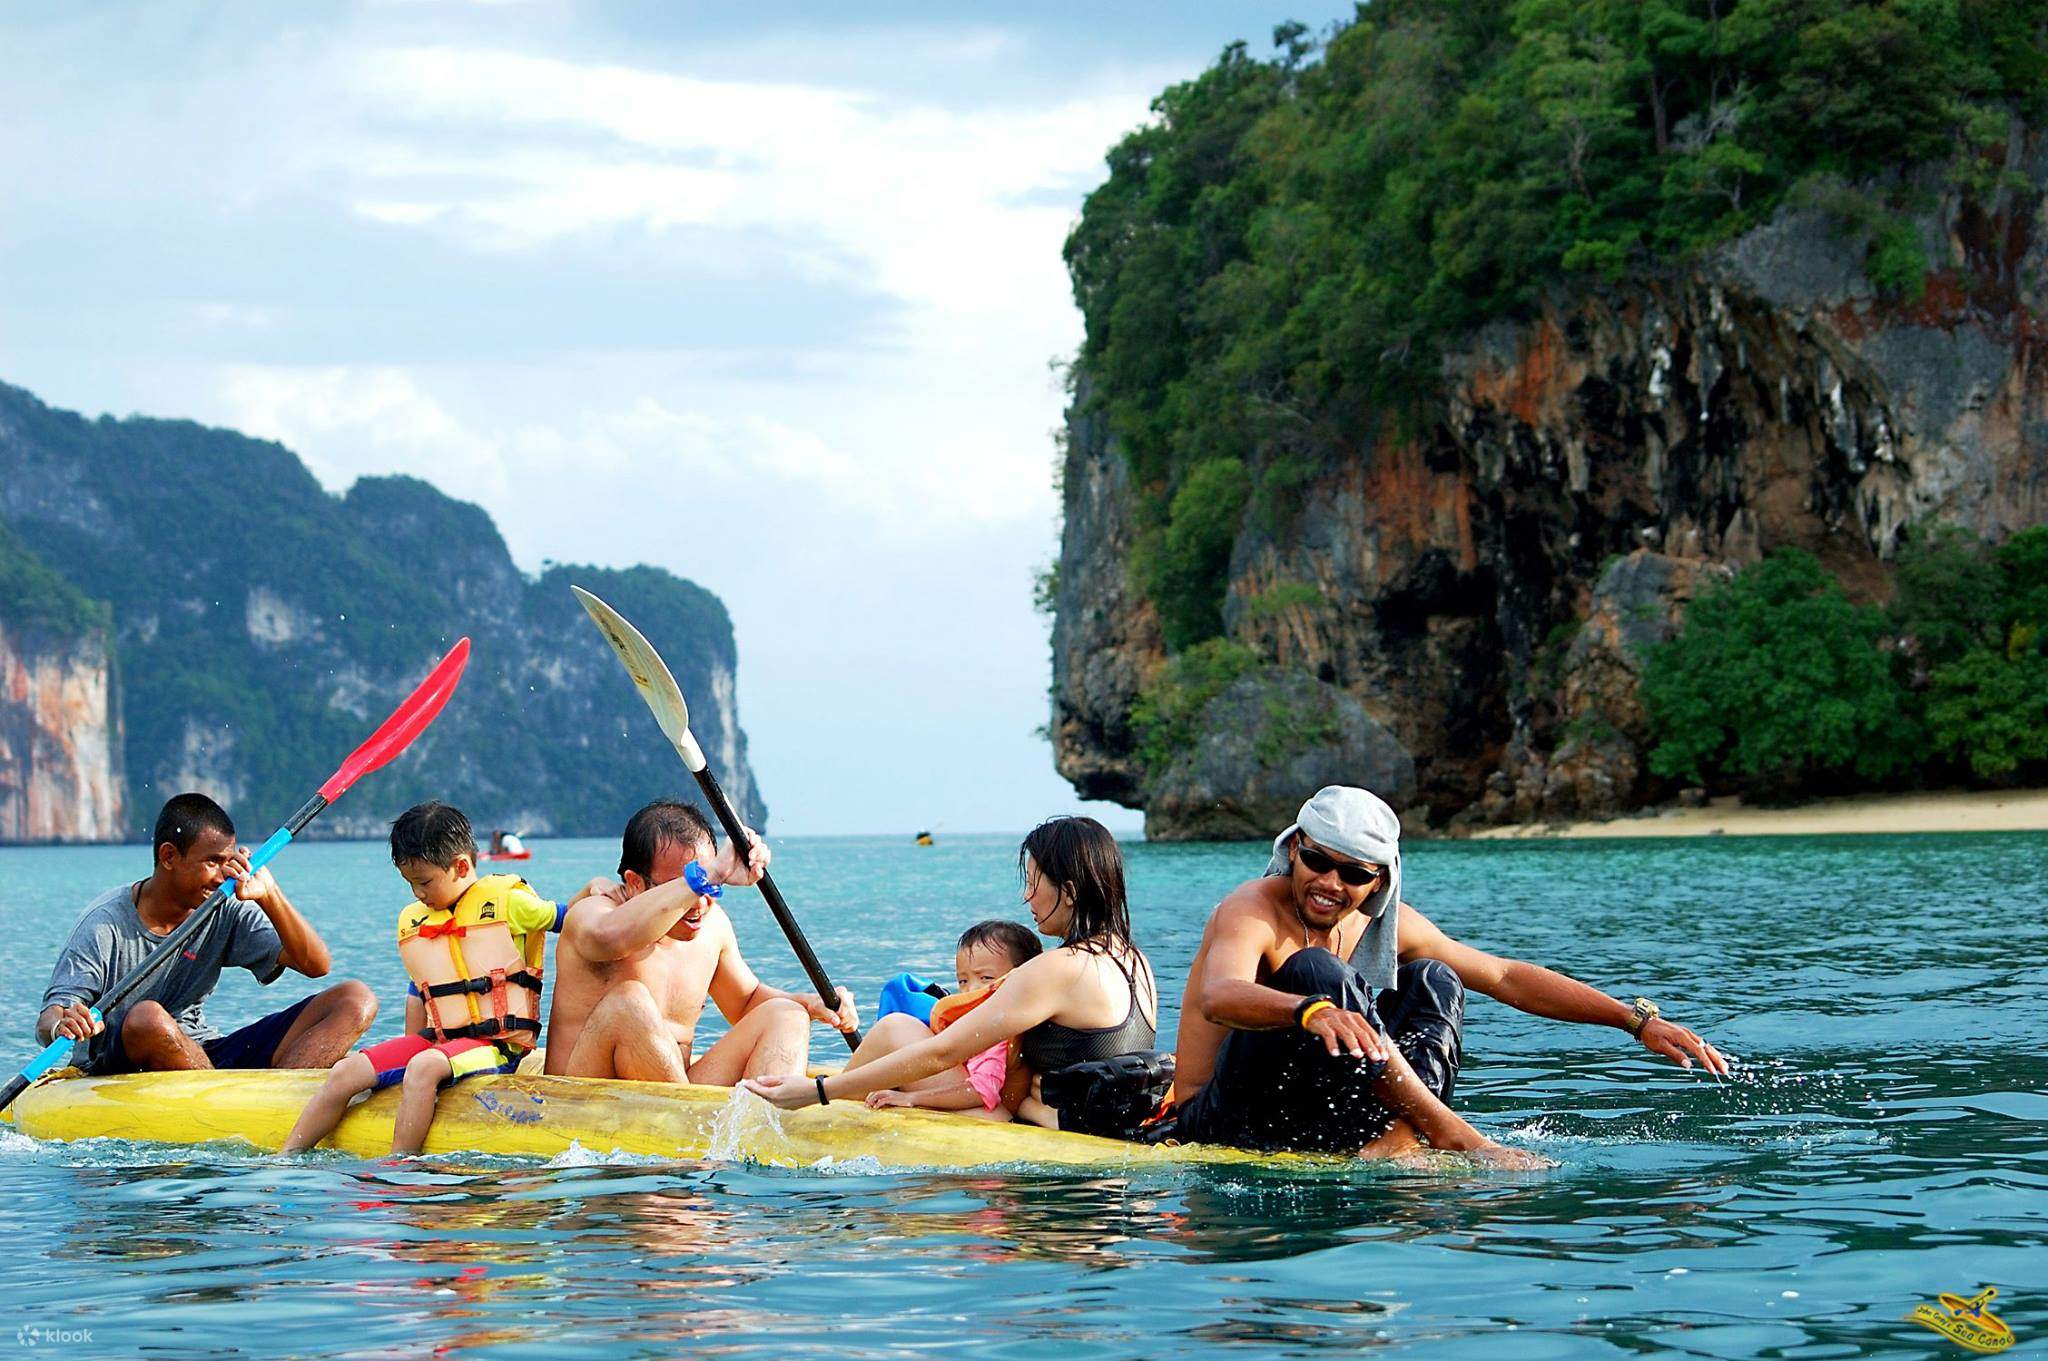 Где отдыхать в таиланде. Пхукет Tourism. Каноэ Пхукет. Тайланд туризм. Пляжный вид туризма.